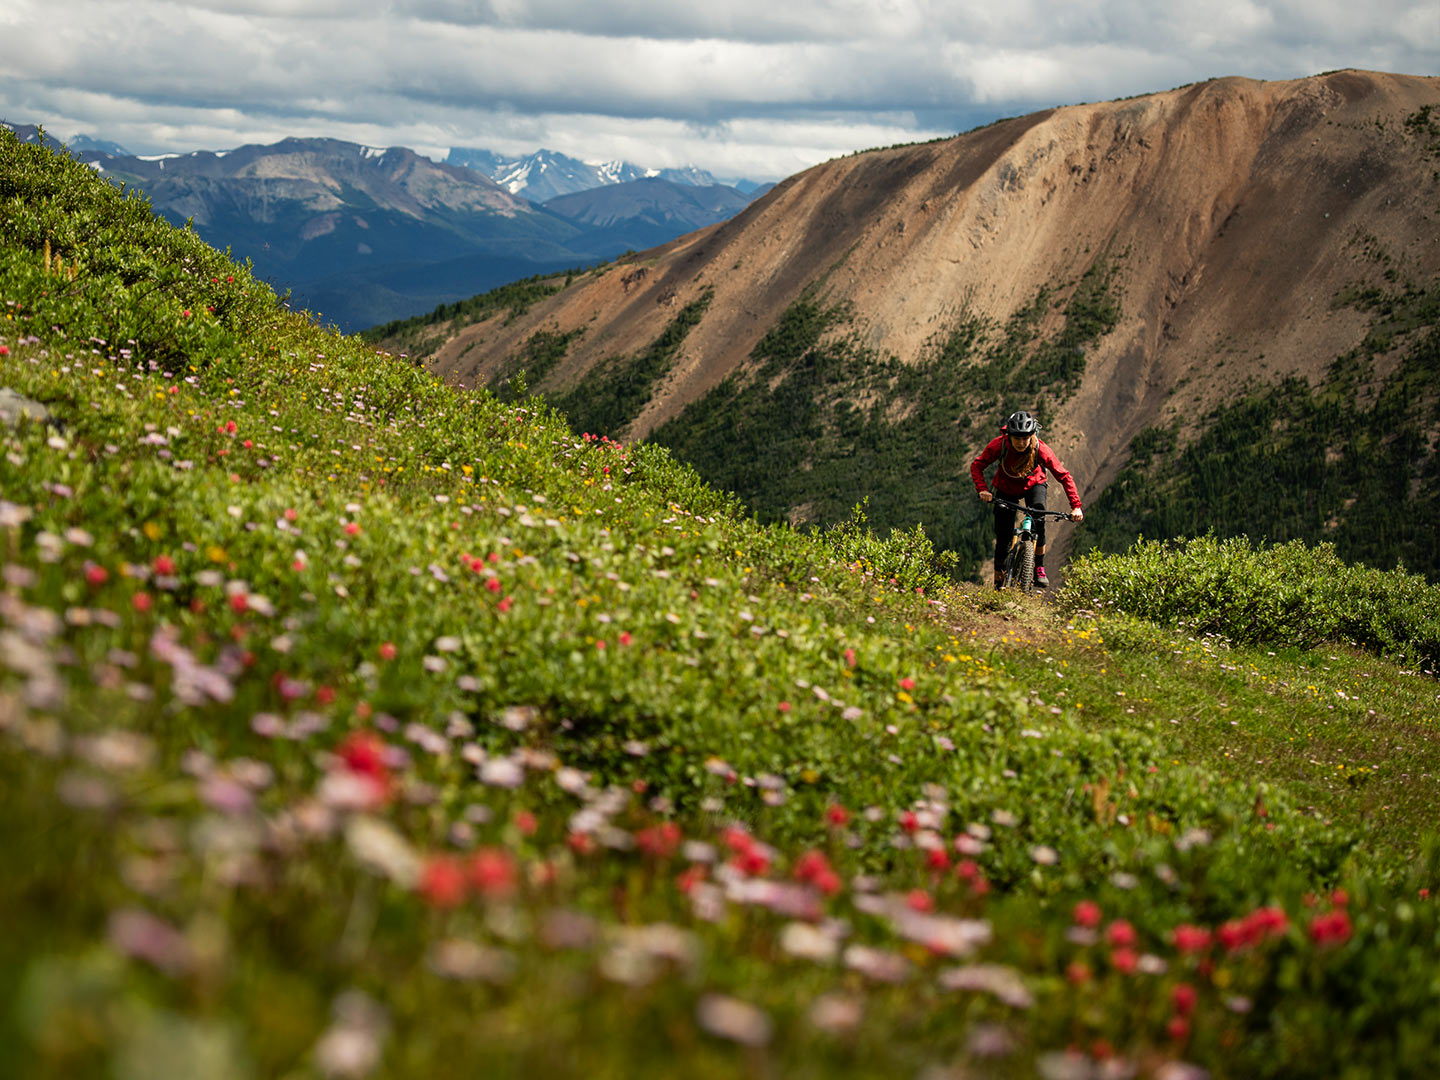 Un ciclista en la distancia, subiendo un sendero cubierto de flores silvestres.